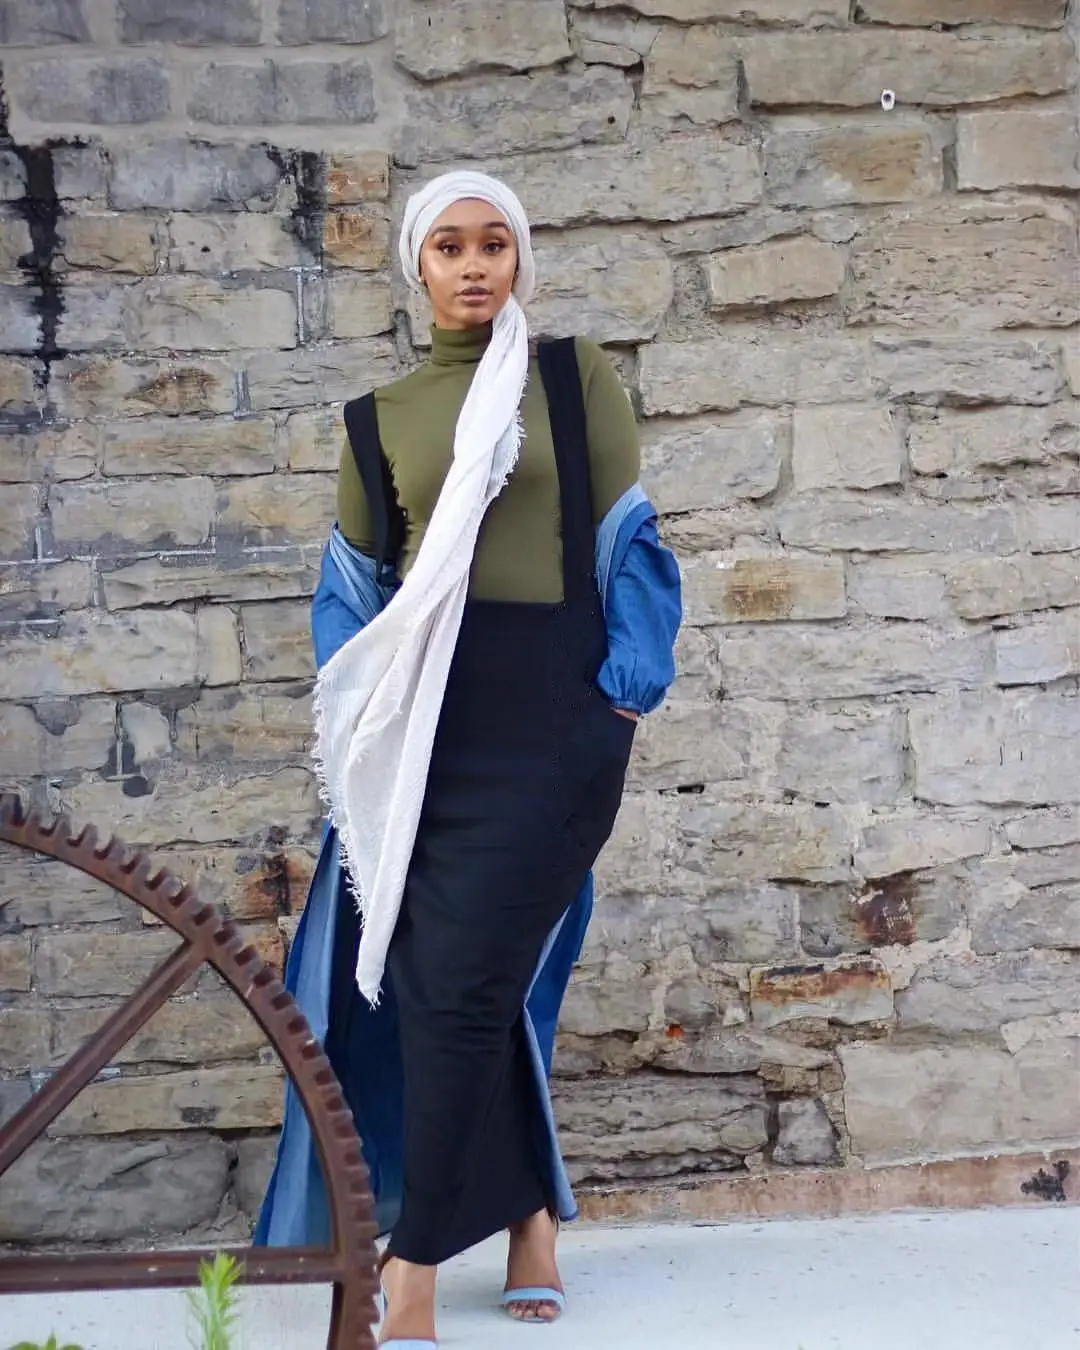 Модная мусульманская женская длинная хлопковая юбка на подтяжках, высокая талия, облегающая макси юбка-карандаш, мусульманская Арабская одежда, повседневная одежда на Ближнем Востоке